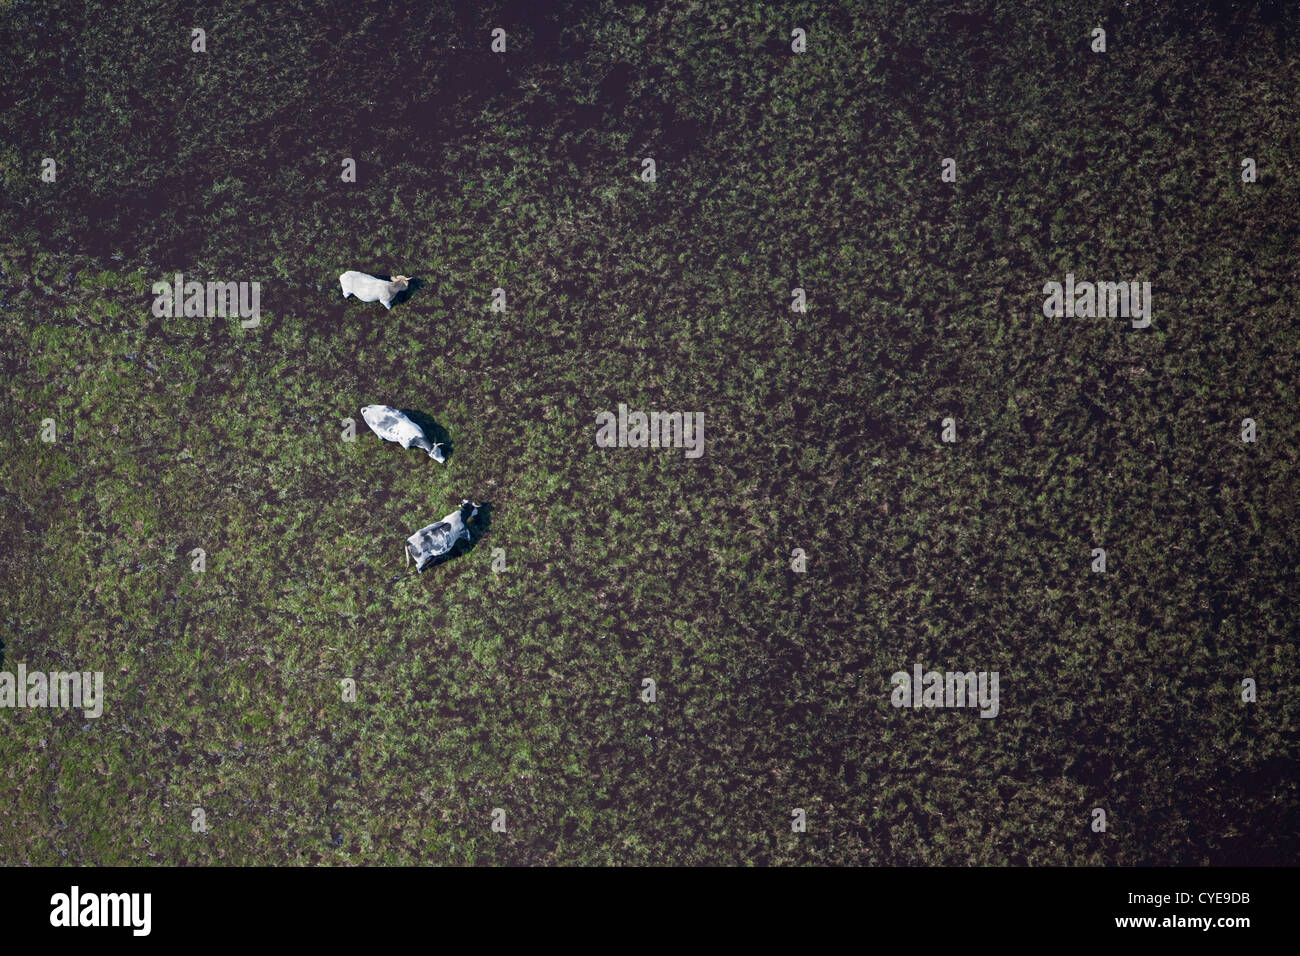 Den Niederlanden, Dwingeloo, Heide genannt: Dwingelderveld oder Dwingelose Heide. Kühe essen Grass im Planschbecken. Luft. Stockfoto